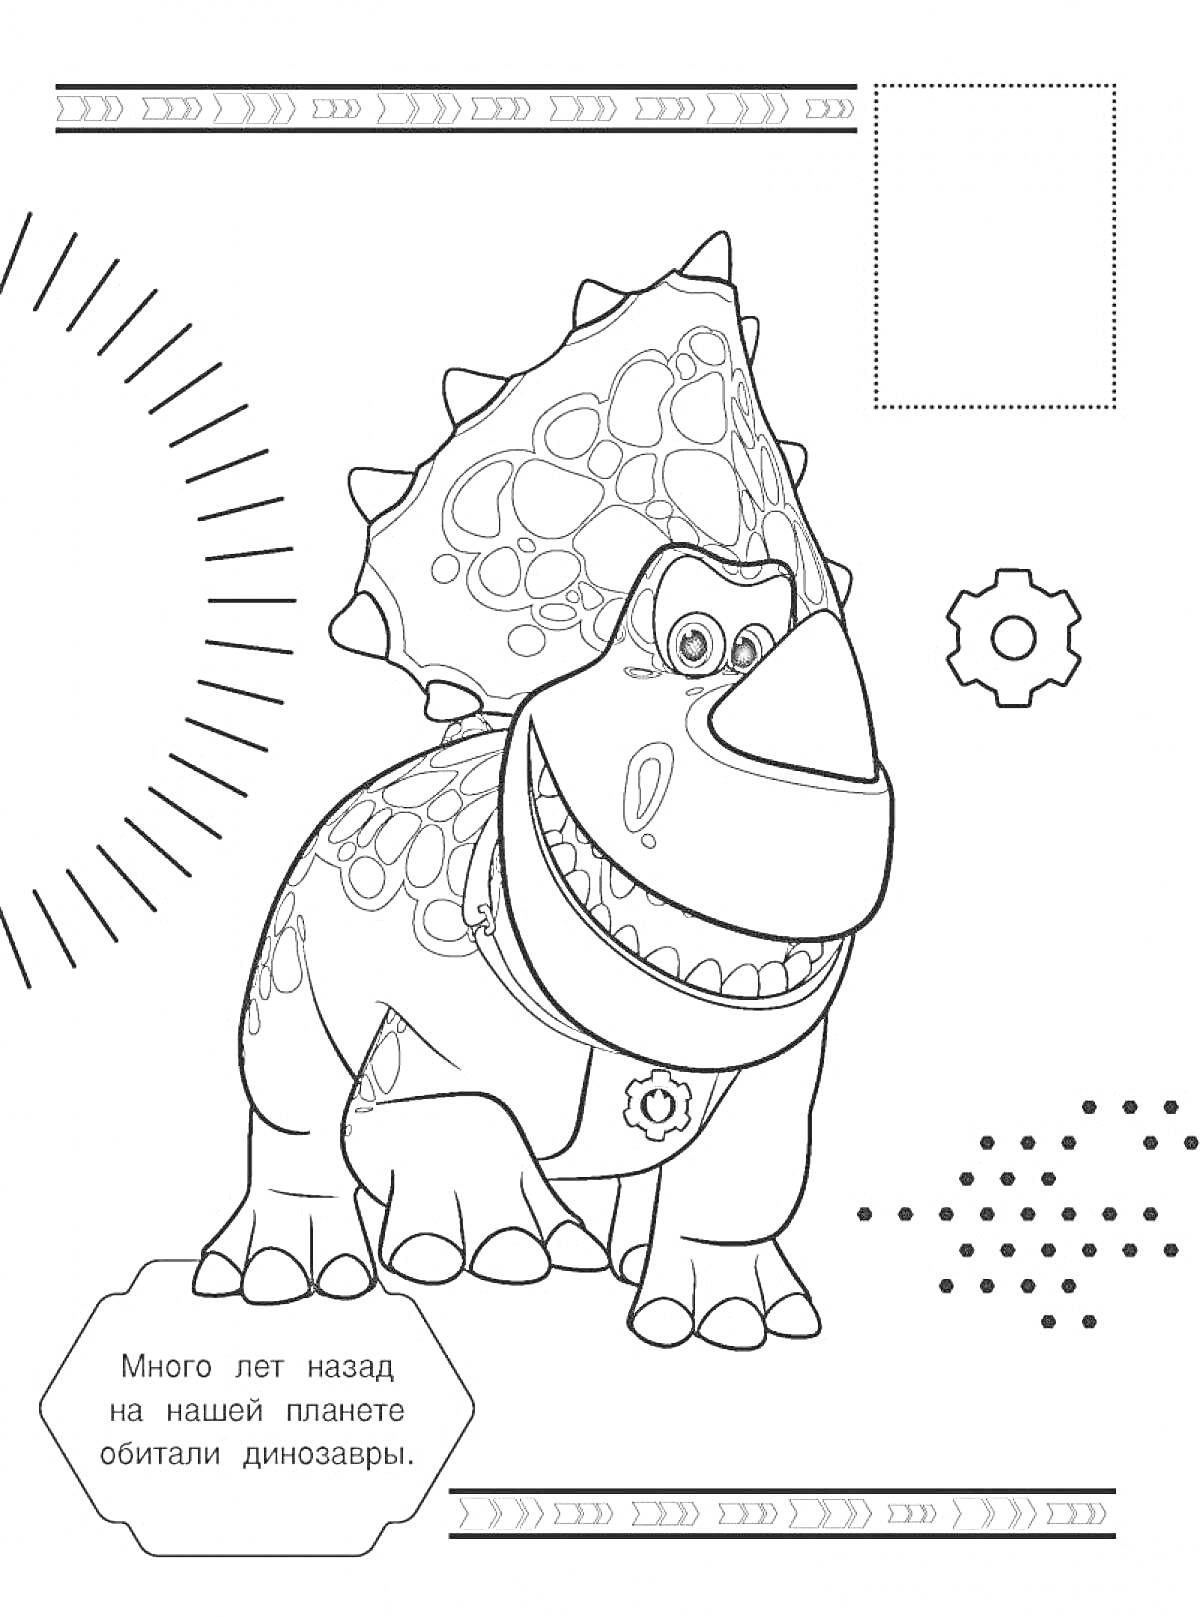 весёлый динозавр с фоном из элементов шестерни, точек и лучей солнца